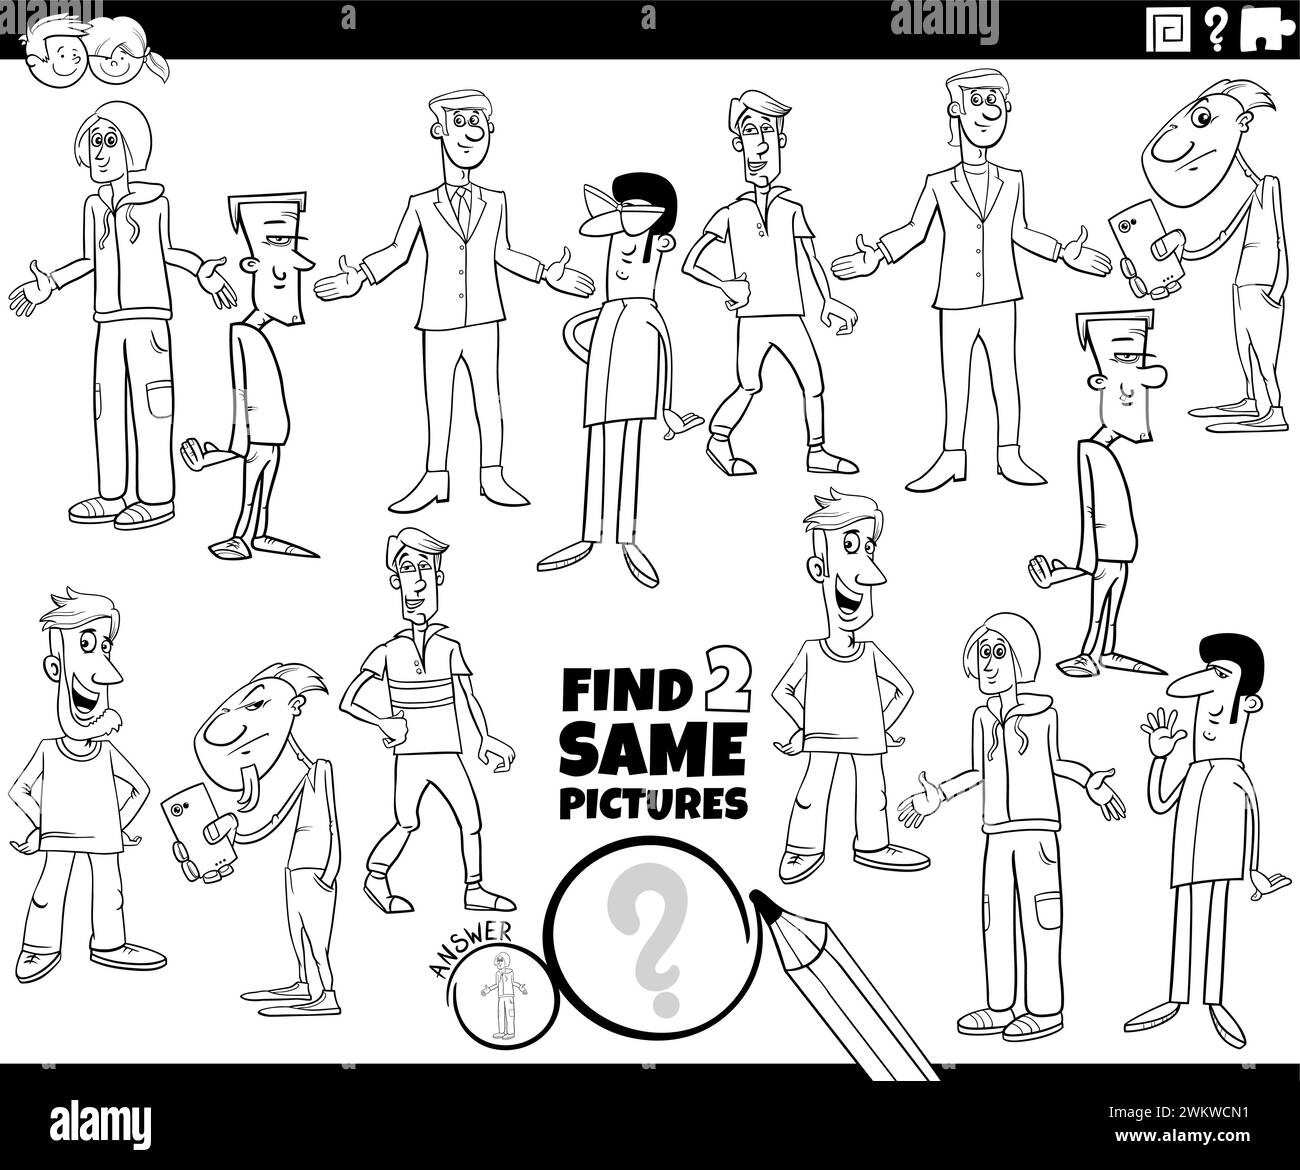 Illustration de dessin animé de trouver deux mêmes images activité éducative avec des gars ou de jeunes hommes personnages à colorier Illustration de Vecteur